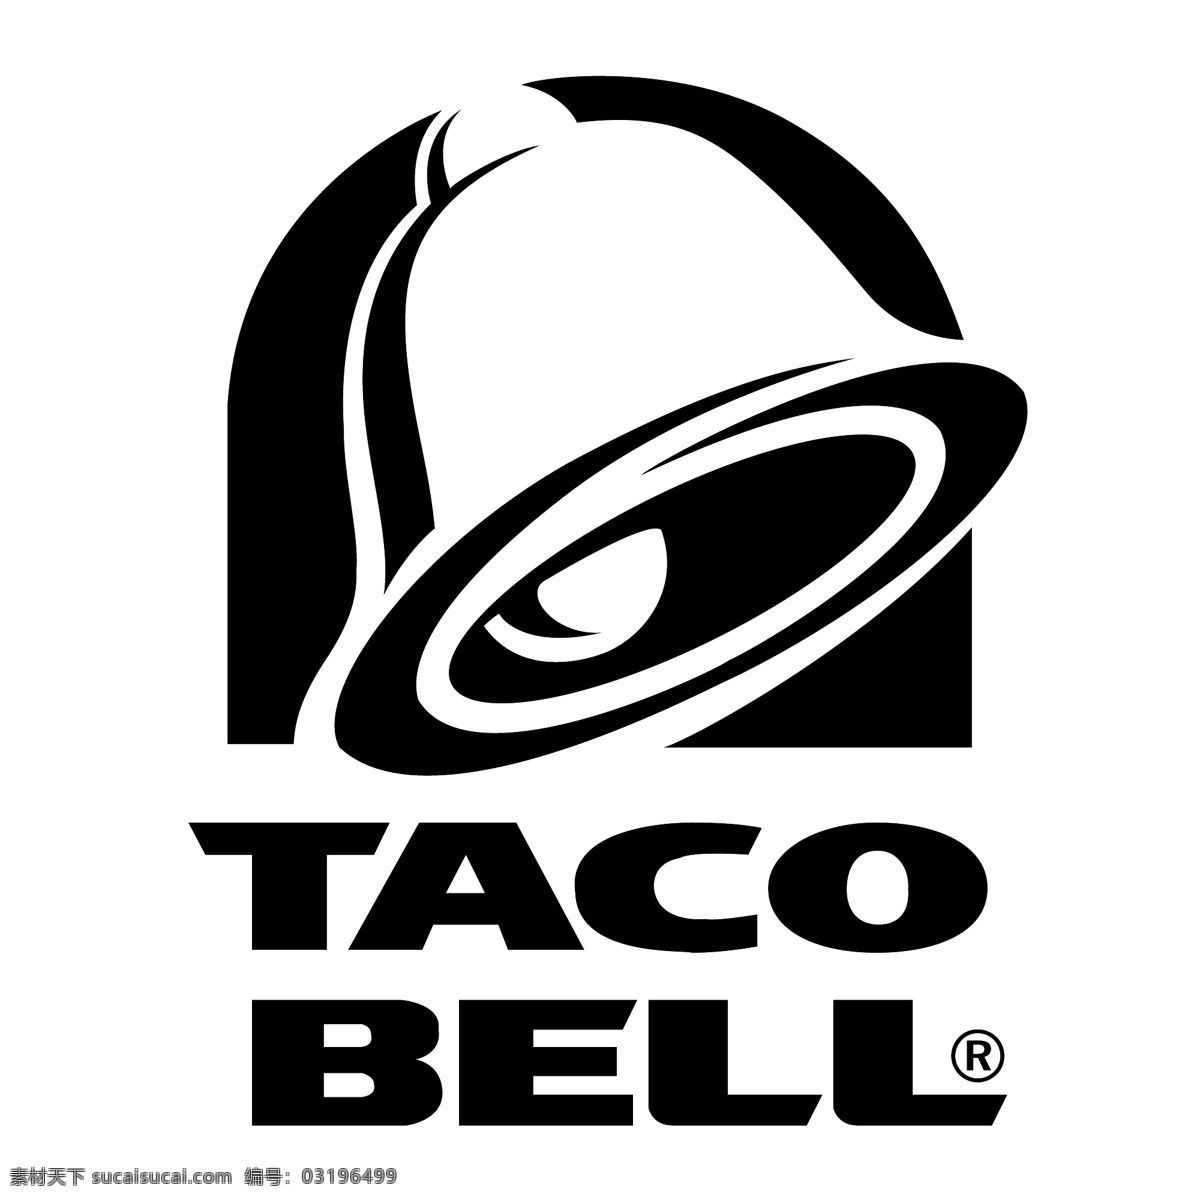 塔可钟0 标志 矢量标志 钟 塔克 塔可钟 塔可钟的标志 taco bell 塔 矢量 logo2 向量 标识 标识taco 钟铃 logo 矢量图 建筑家居